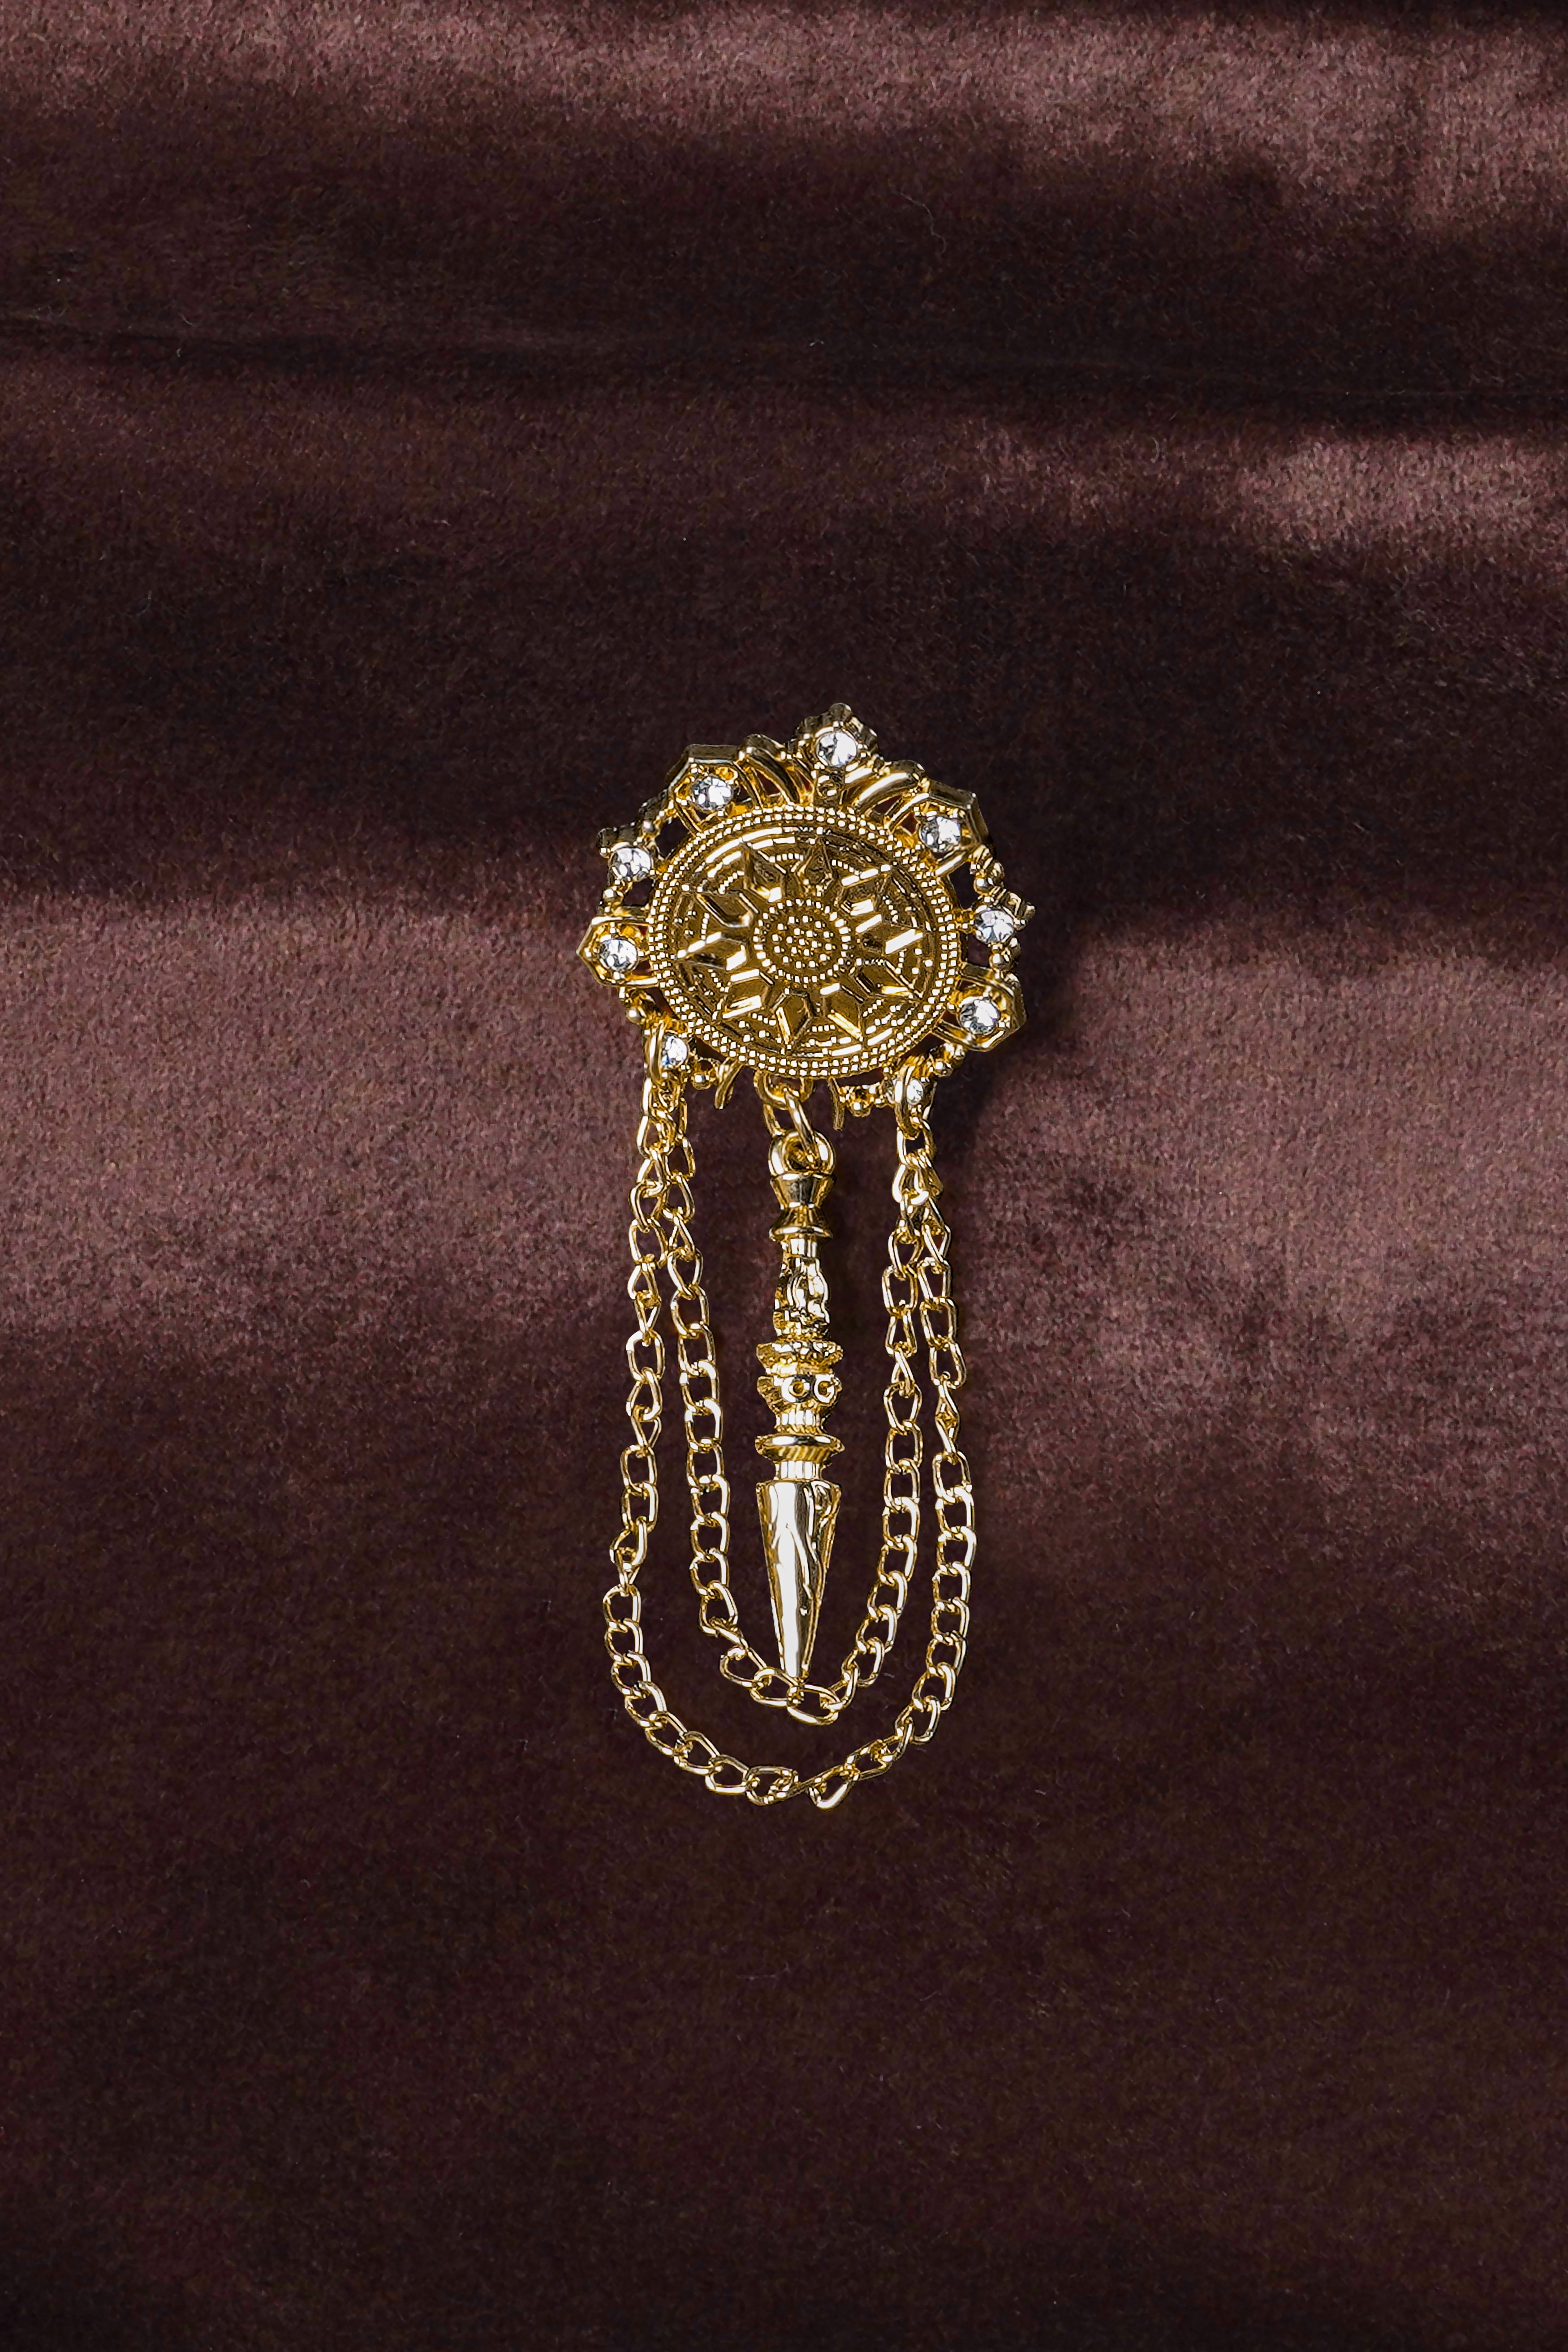 Royal Emblem Designer Gold Tone Brooch